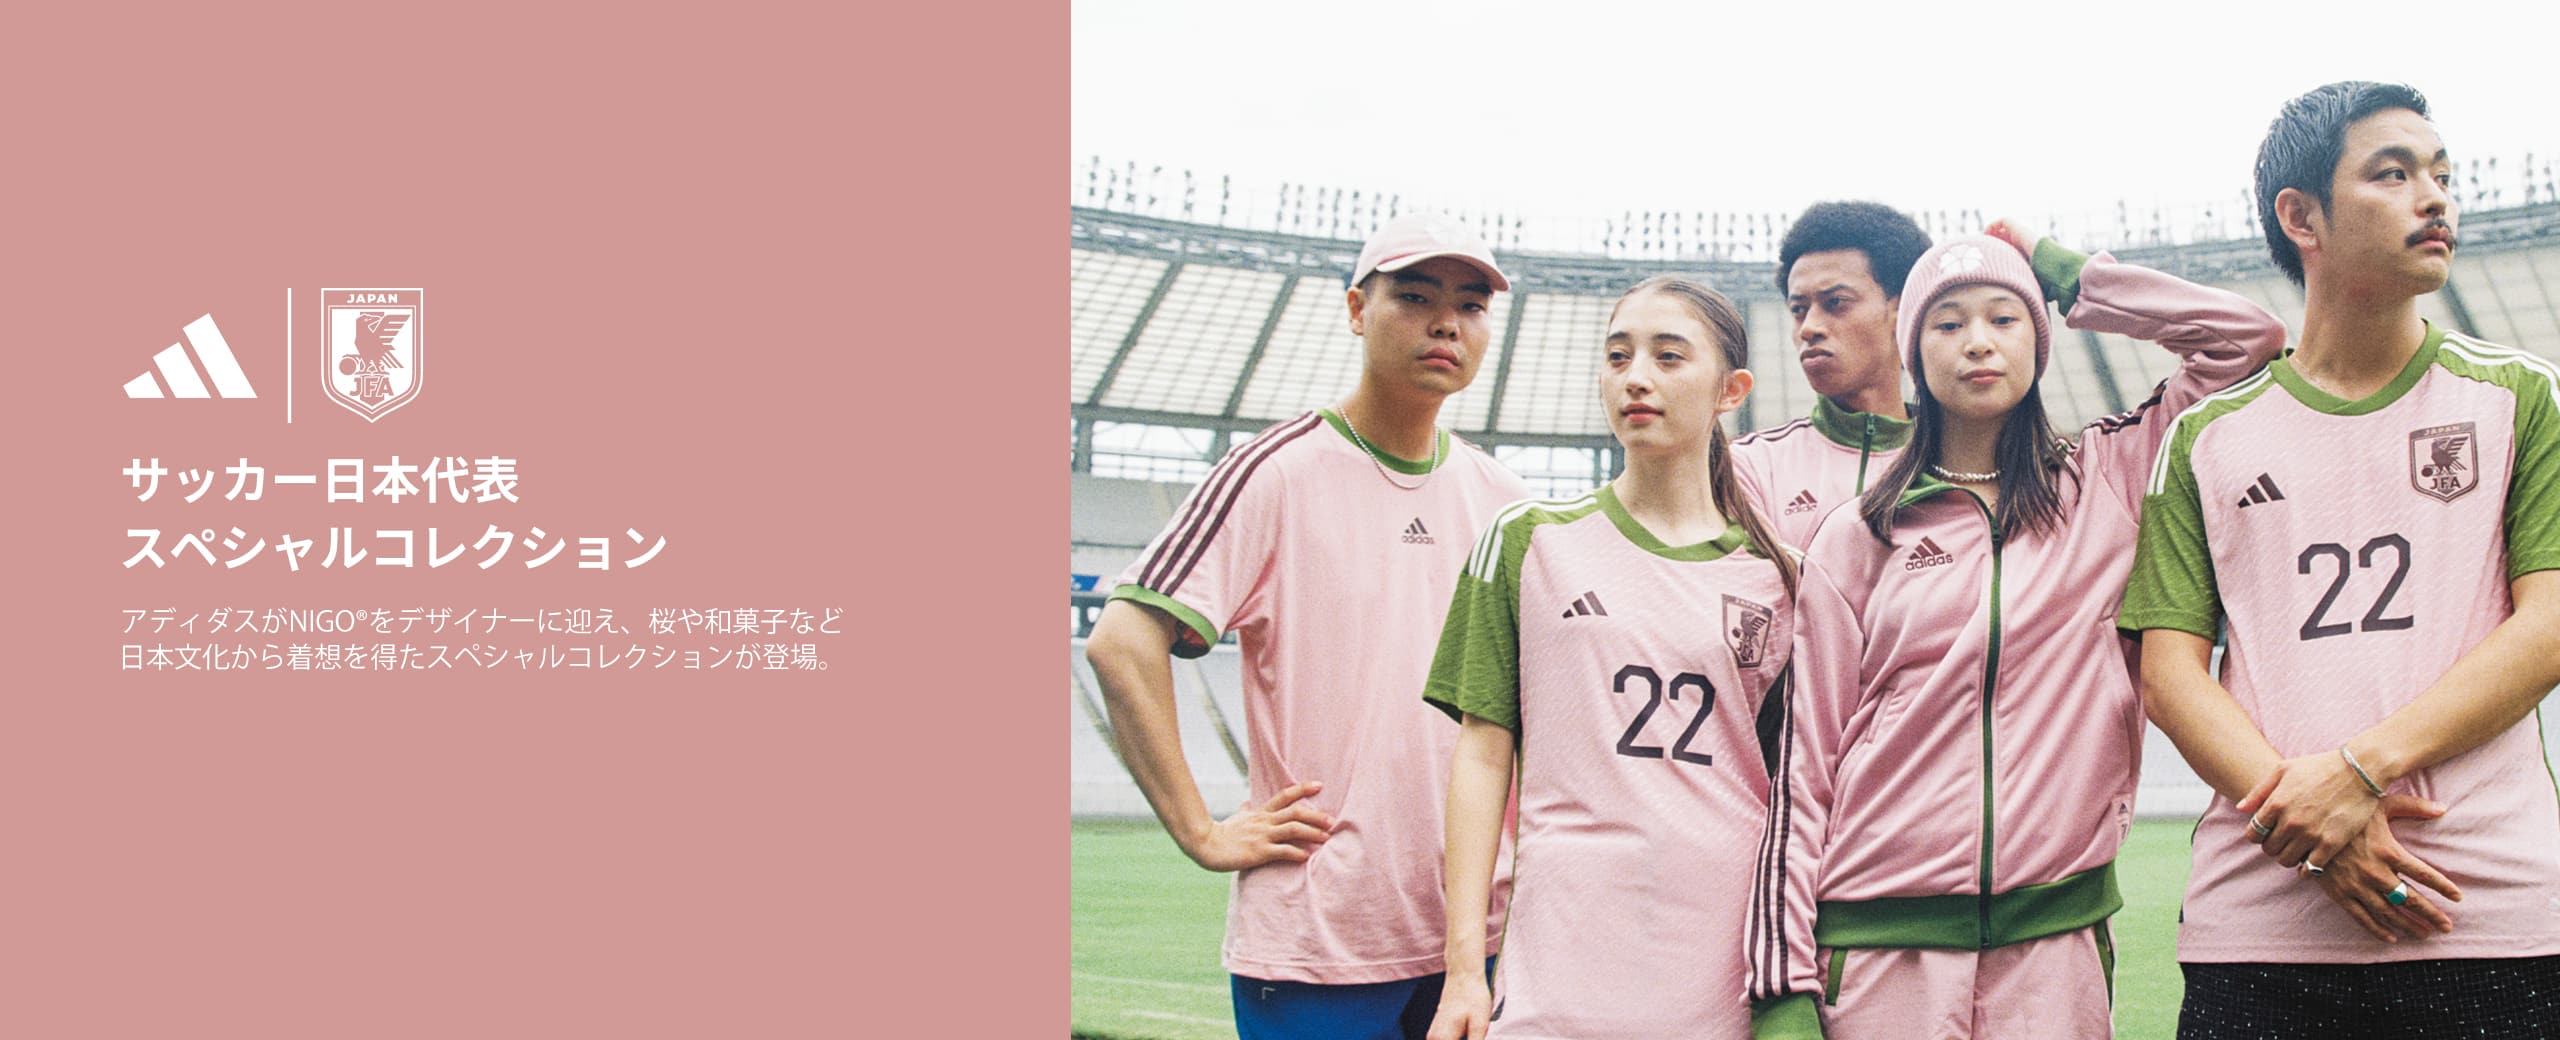 adidas サッカー日本代表 スペシャルパック オーセンティックジャージ 